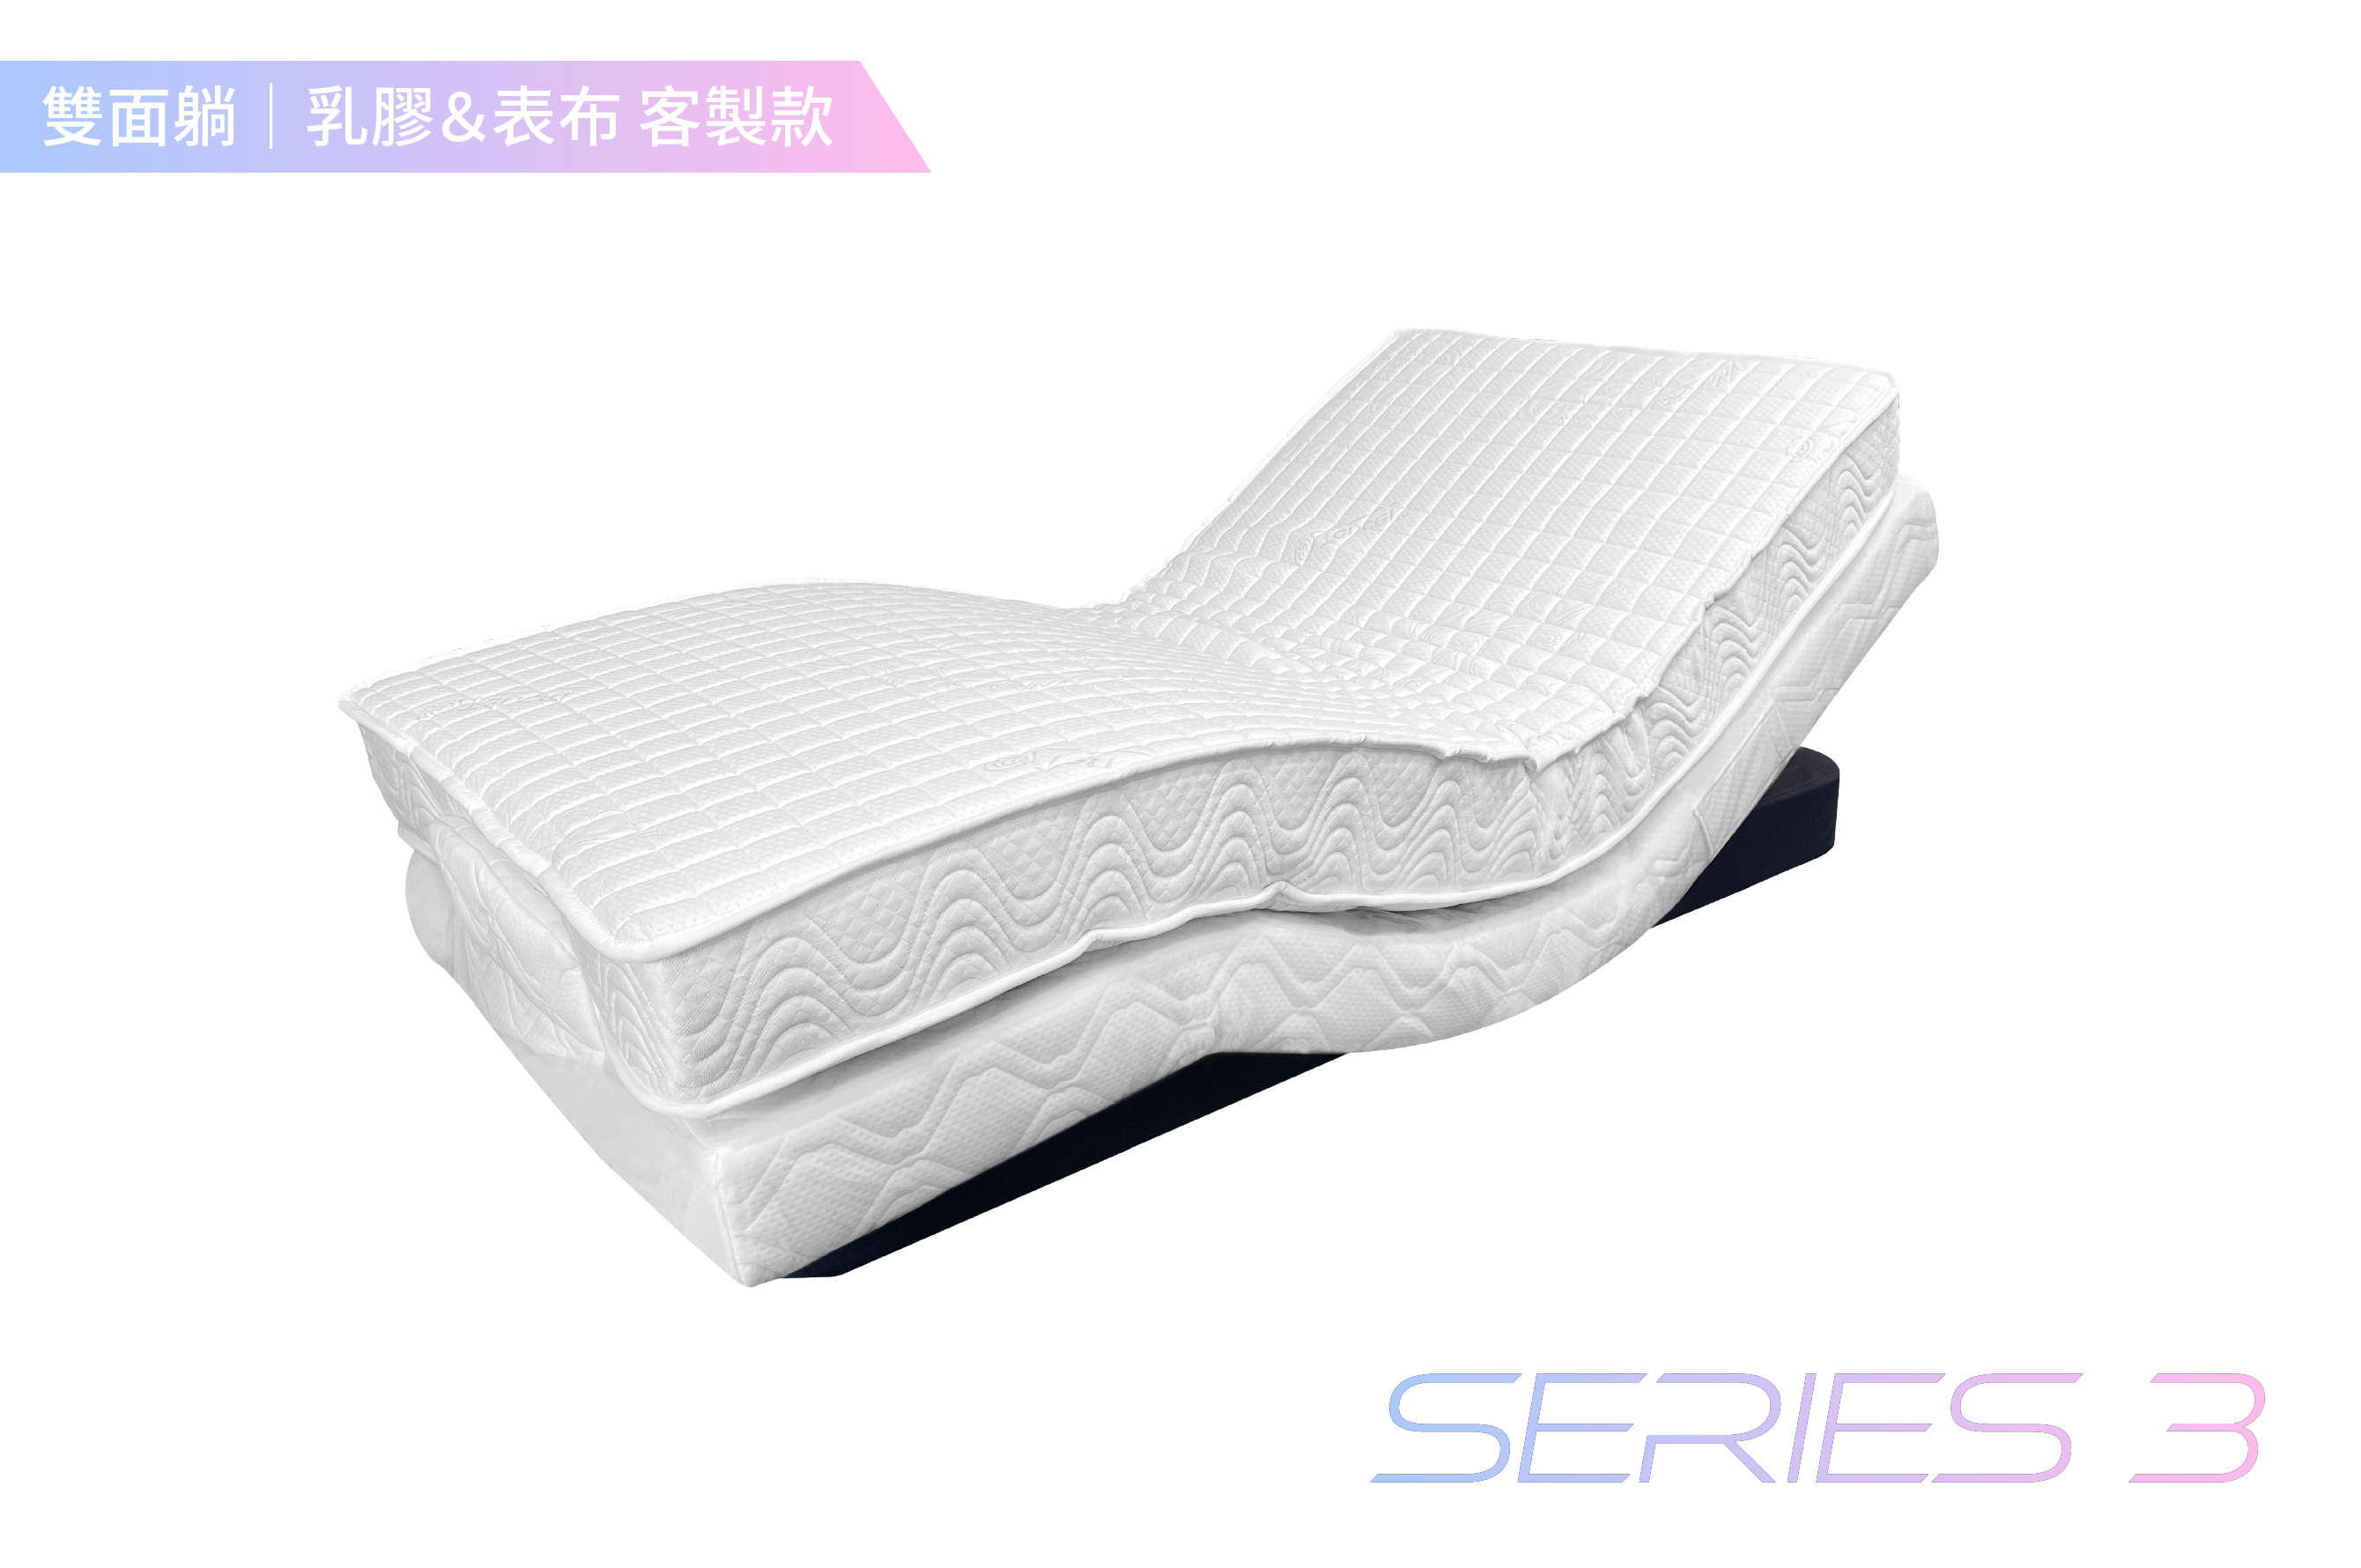 德爾康電動床 / 單人3尺 / 雙面睡-客製化表布&乳膠厚度 / SERIES 3